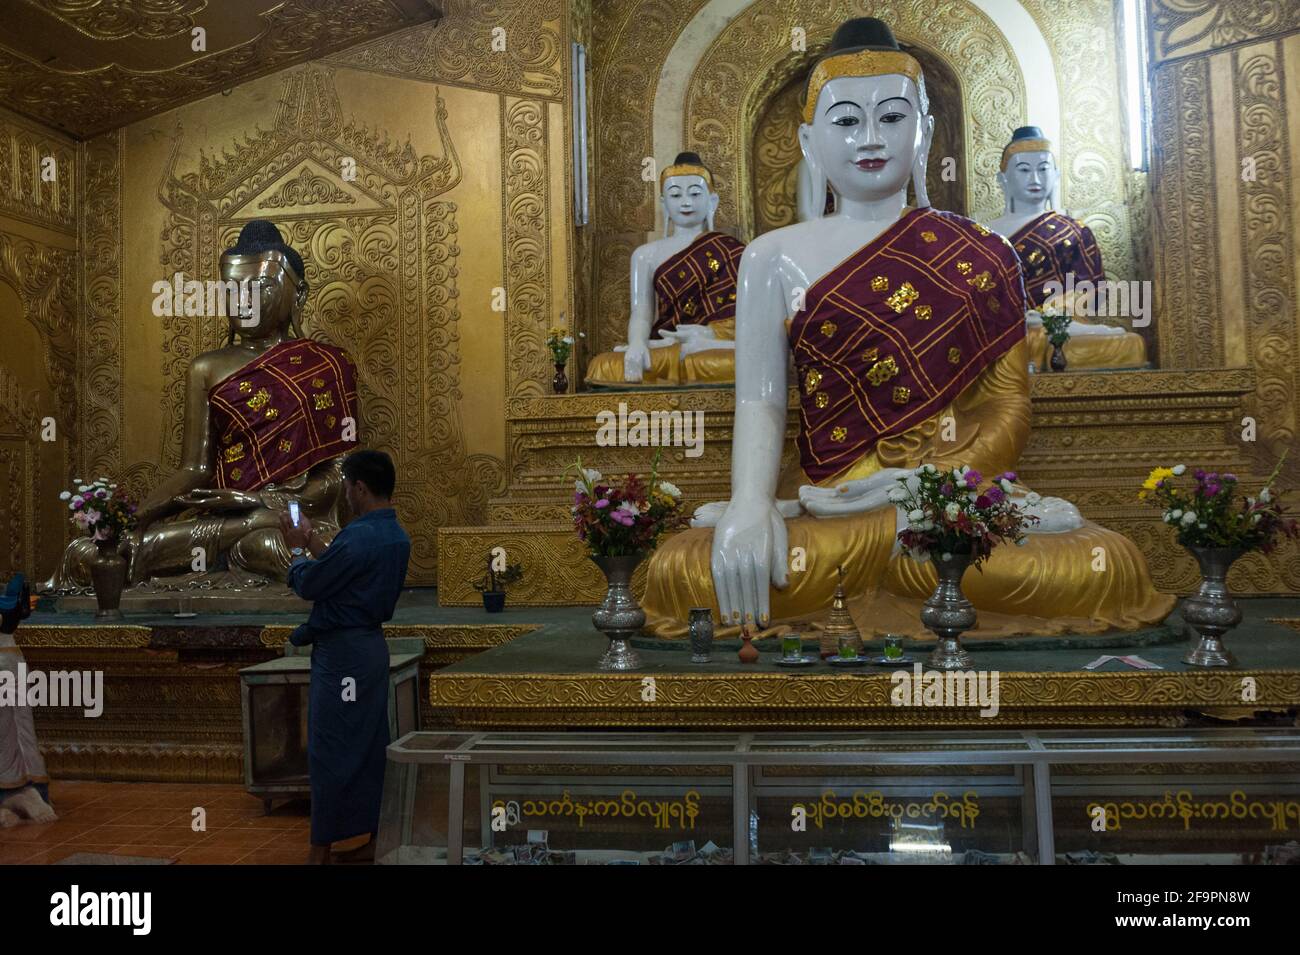 30.01.2017, Mawlamyine, Mon State, Myanmar - EINE Gruppe von Buddha-Figuren in der Kyaikthanlan-Pagode, der höchsten buddhistischen Pagode der Stadt. 0SL170130D062C Stockfoto